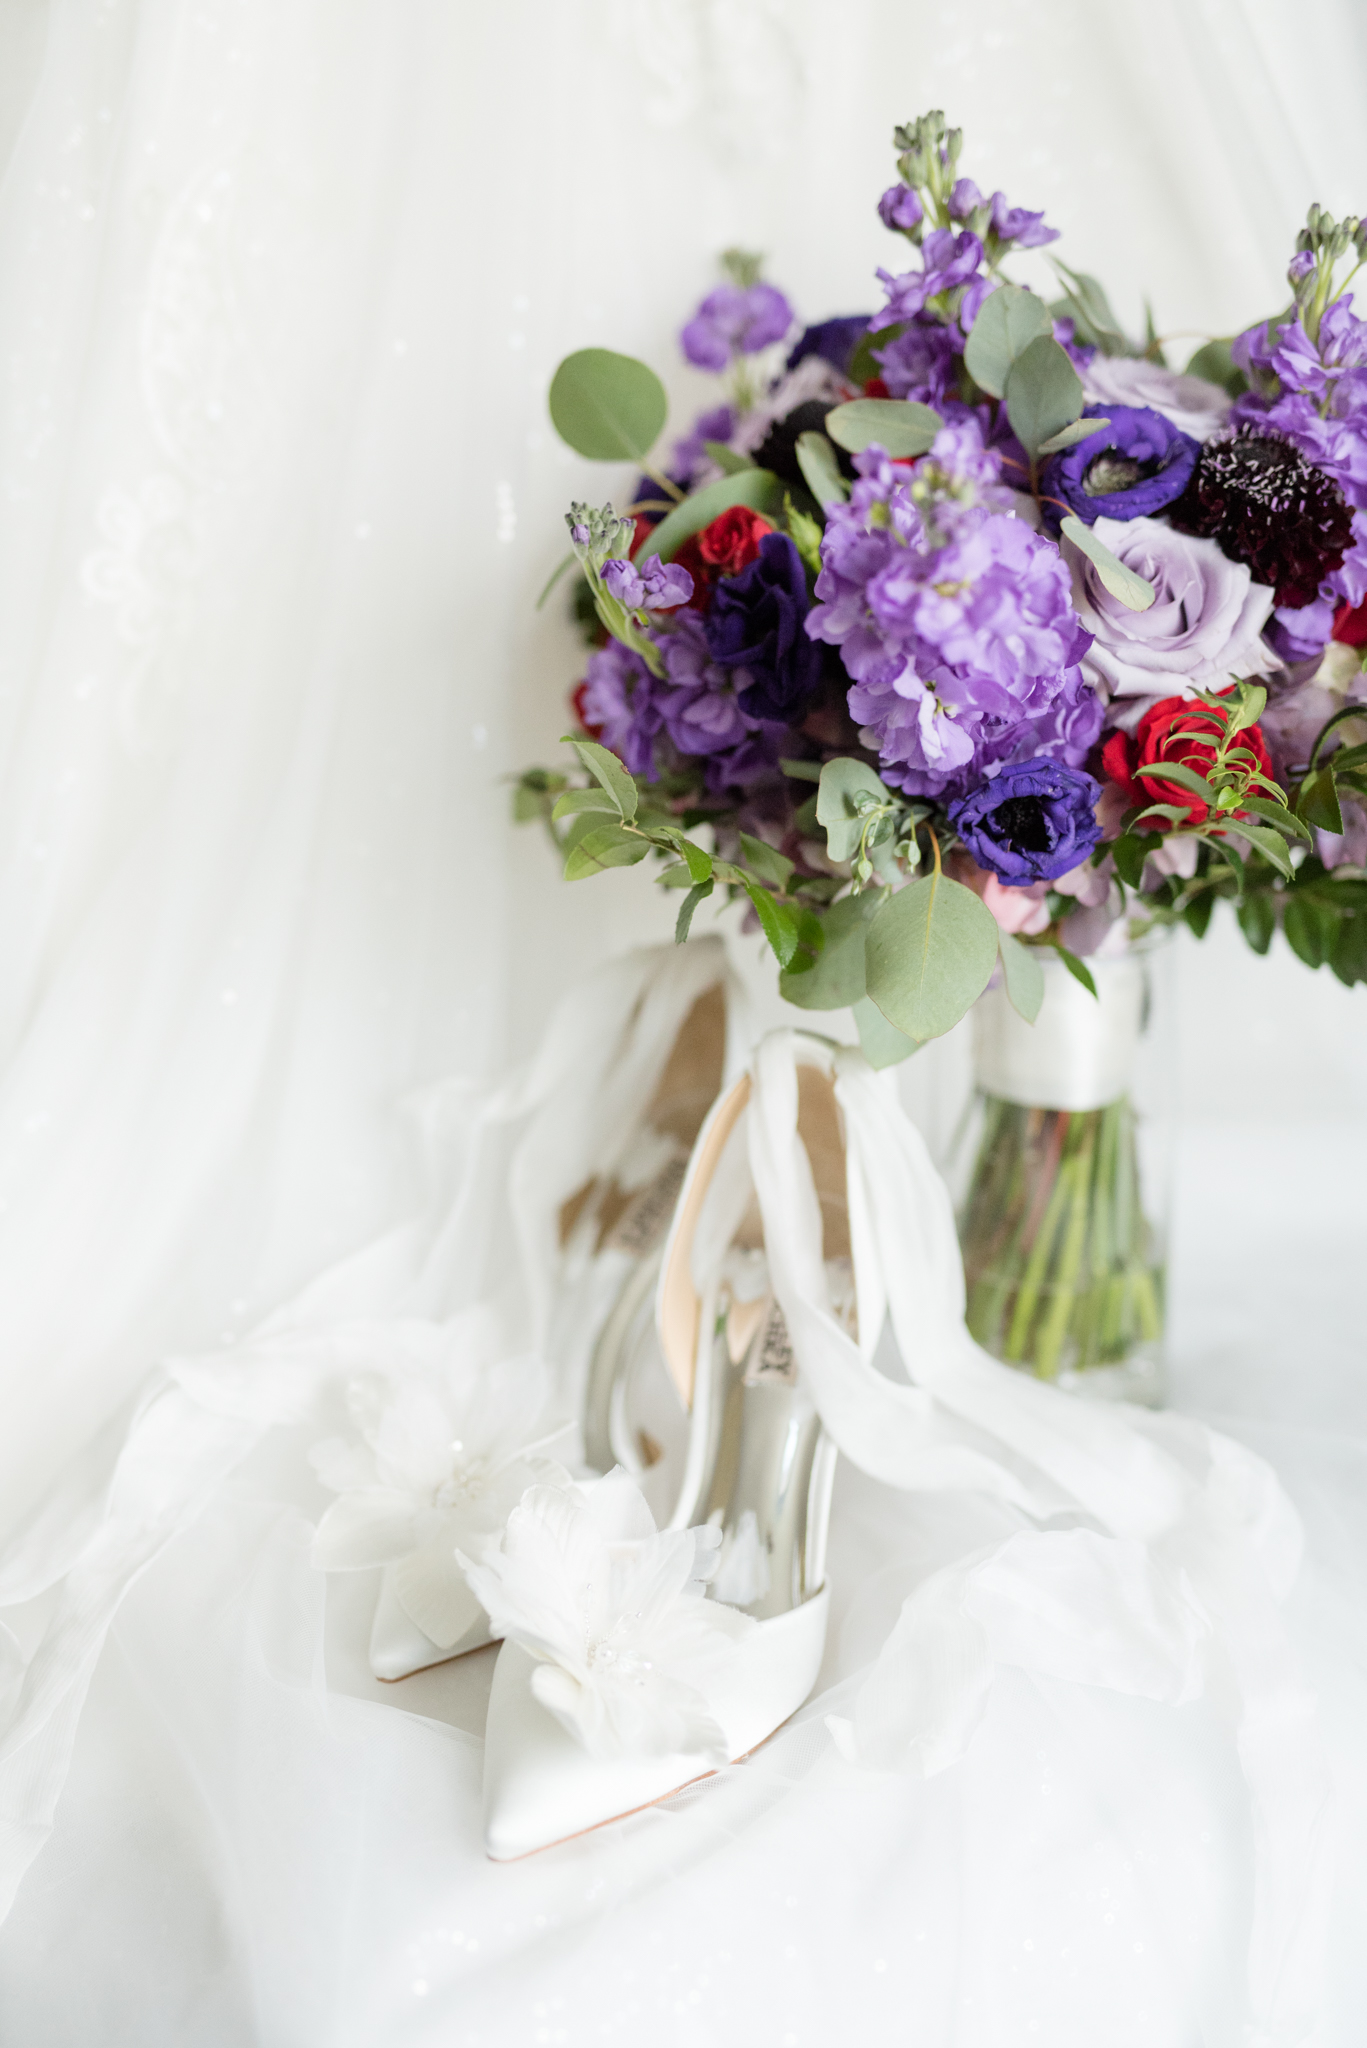 Bridal shoes sit with bouquet.